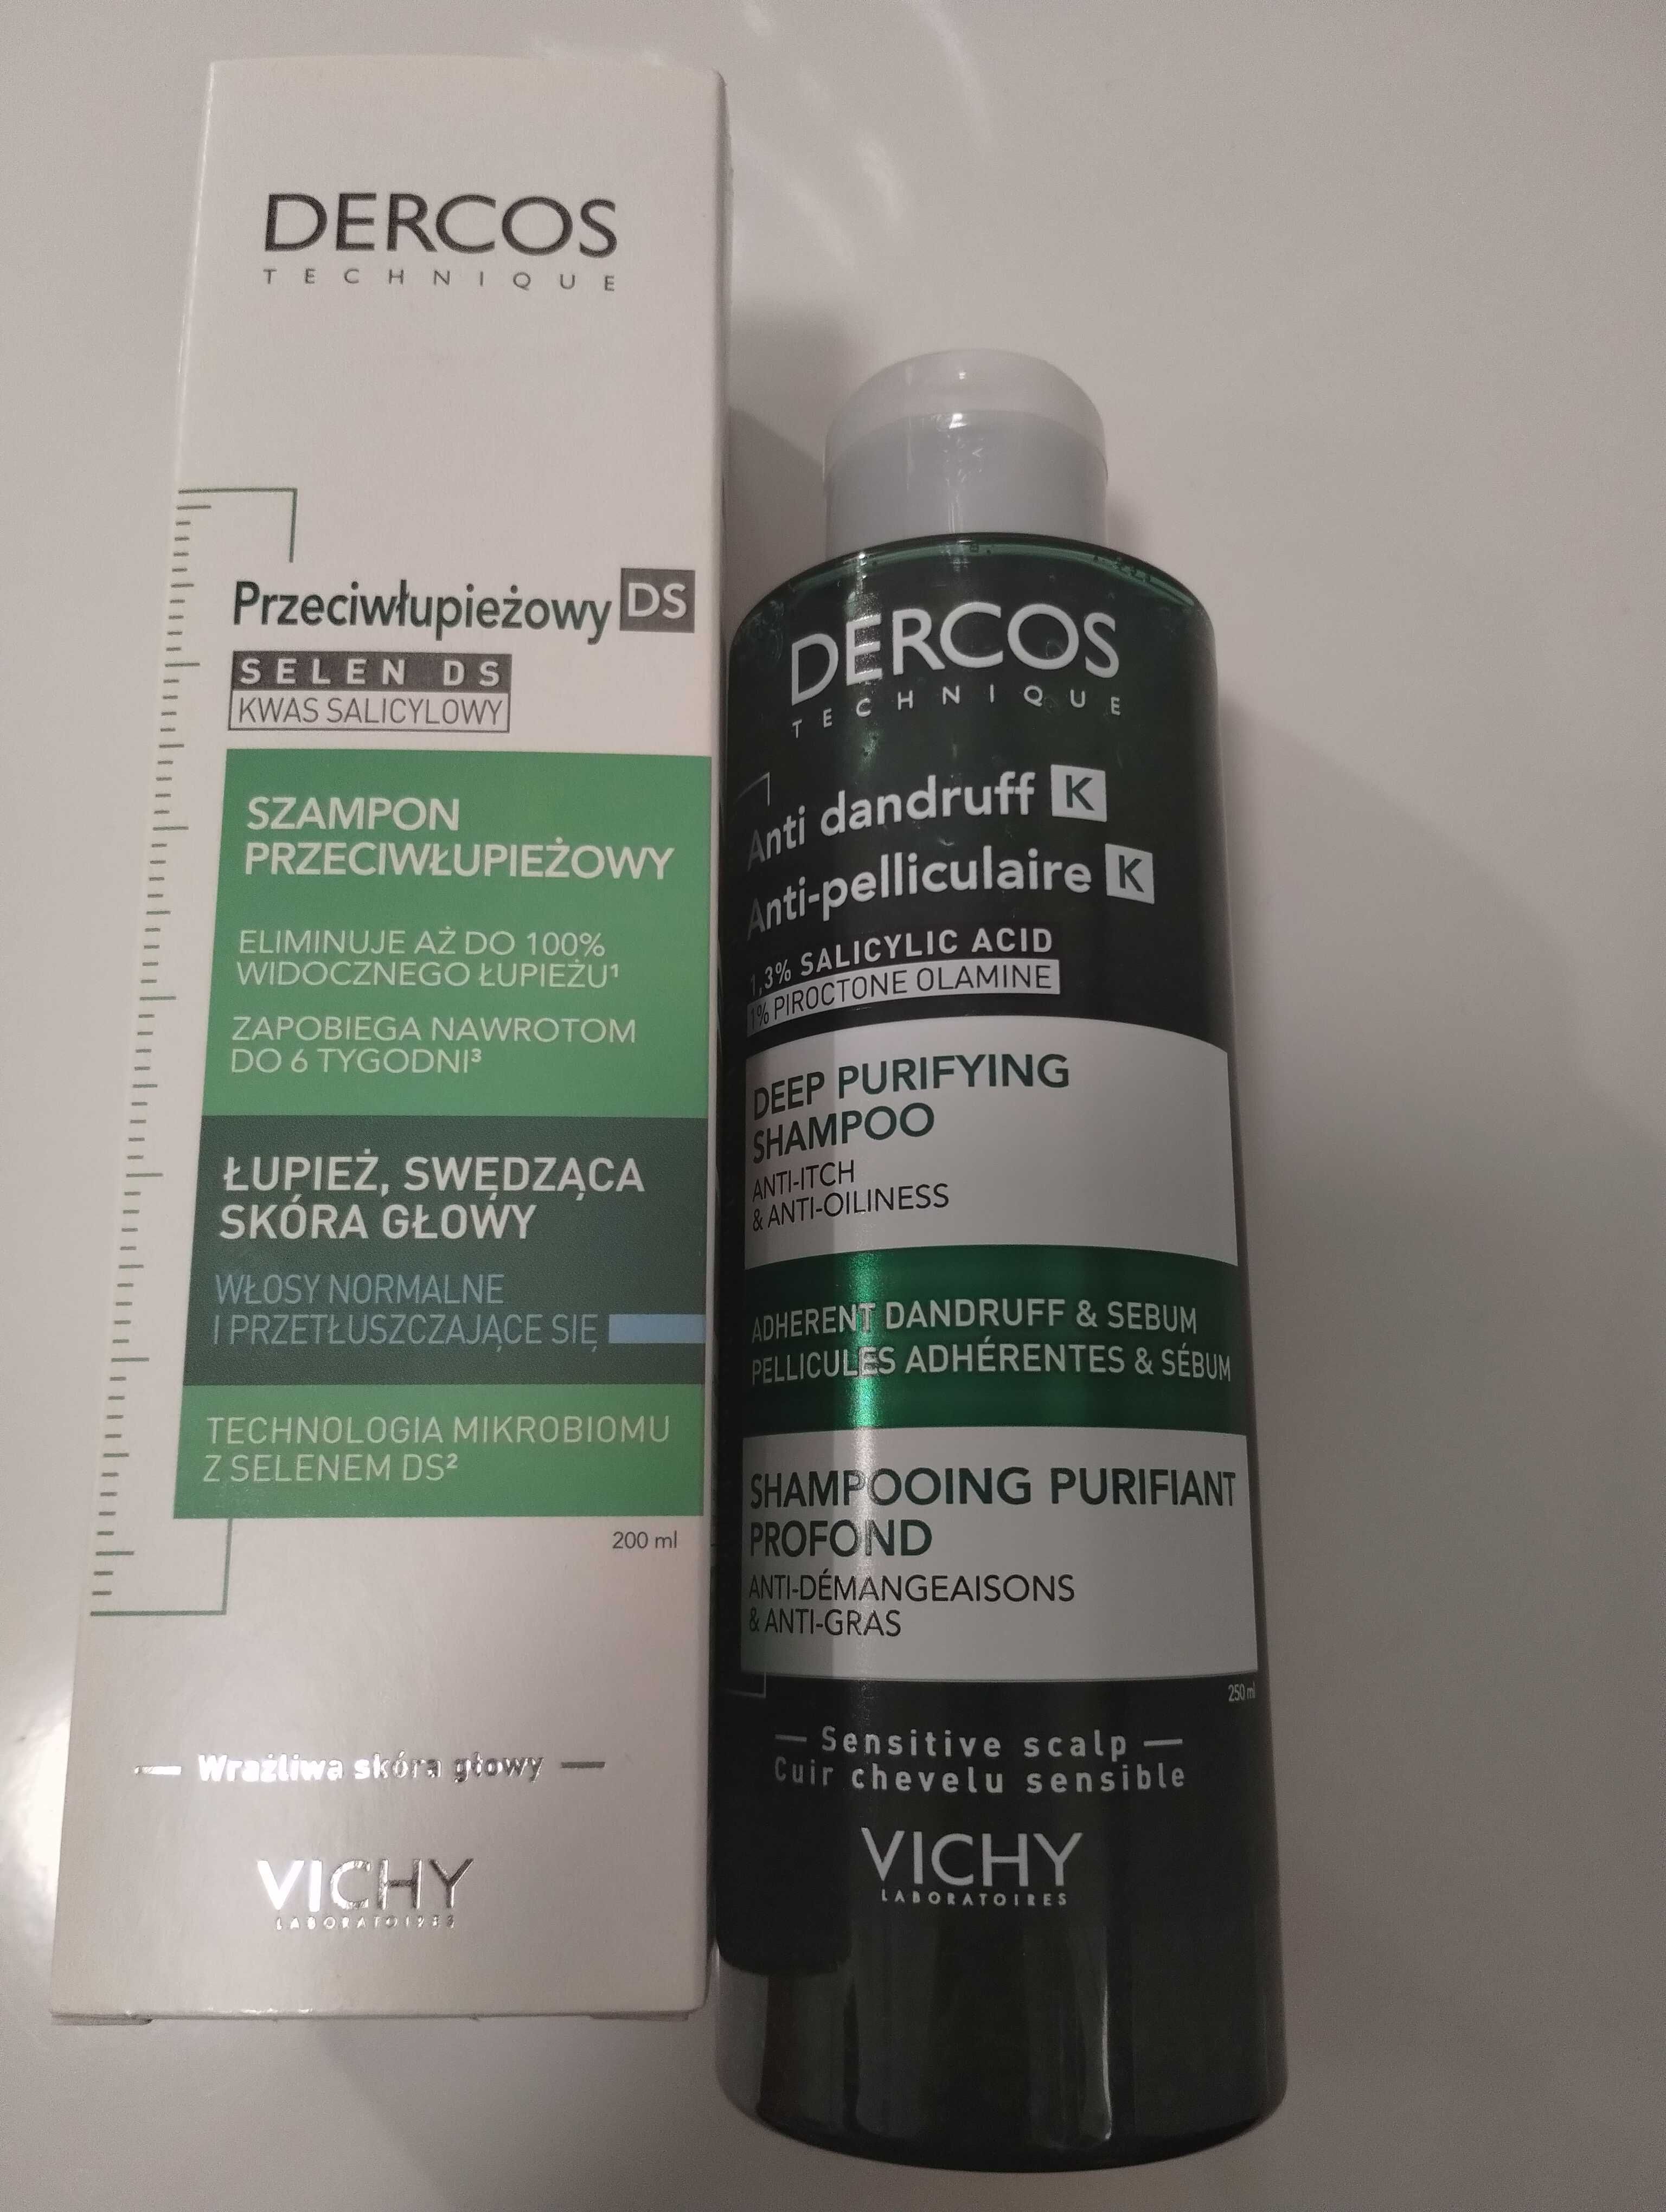 DERCOS Vichy dwa szampony przeciwłupieżowe